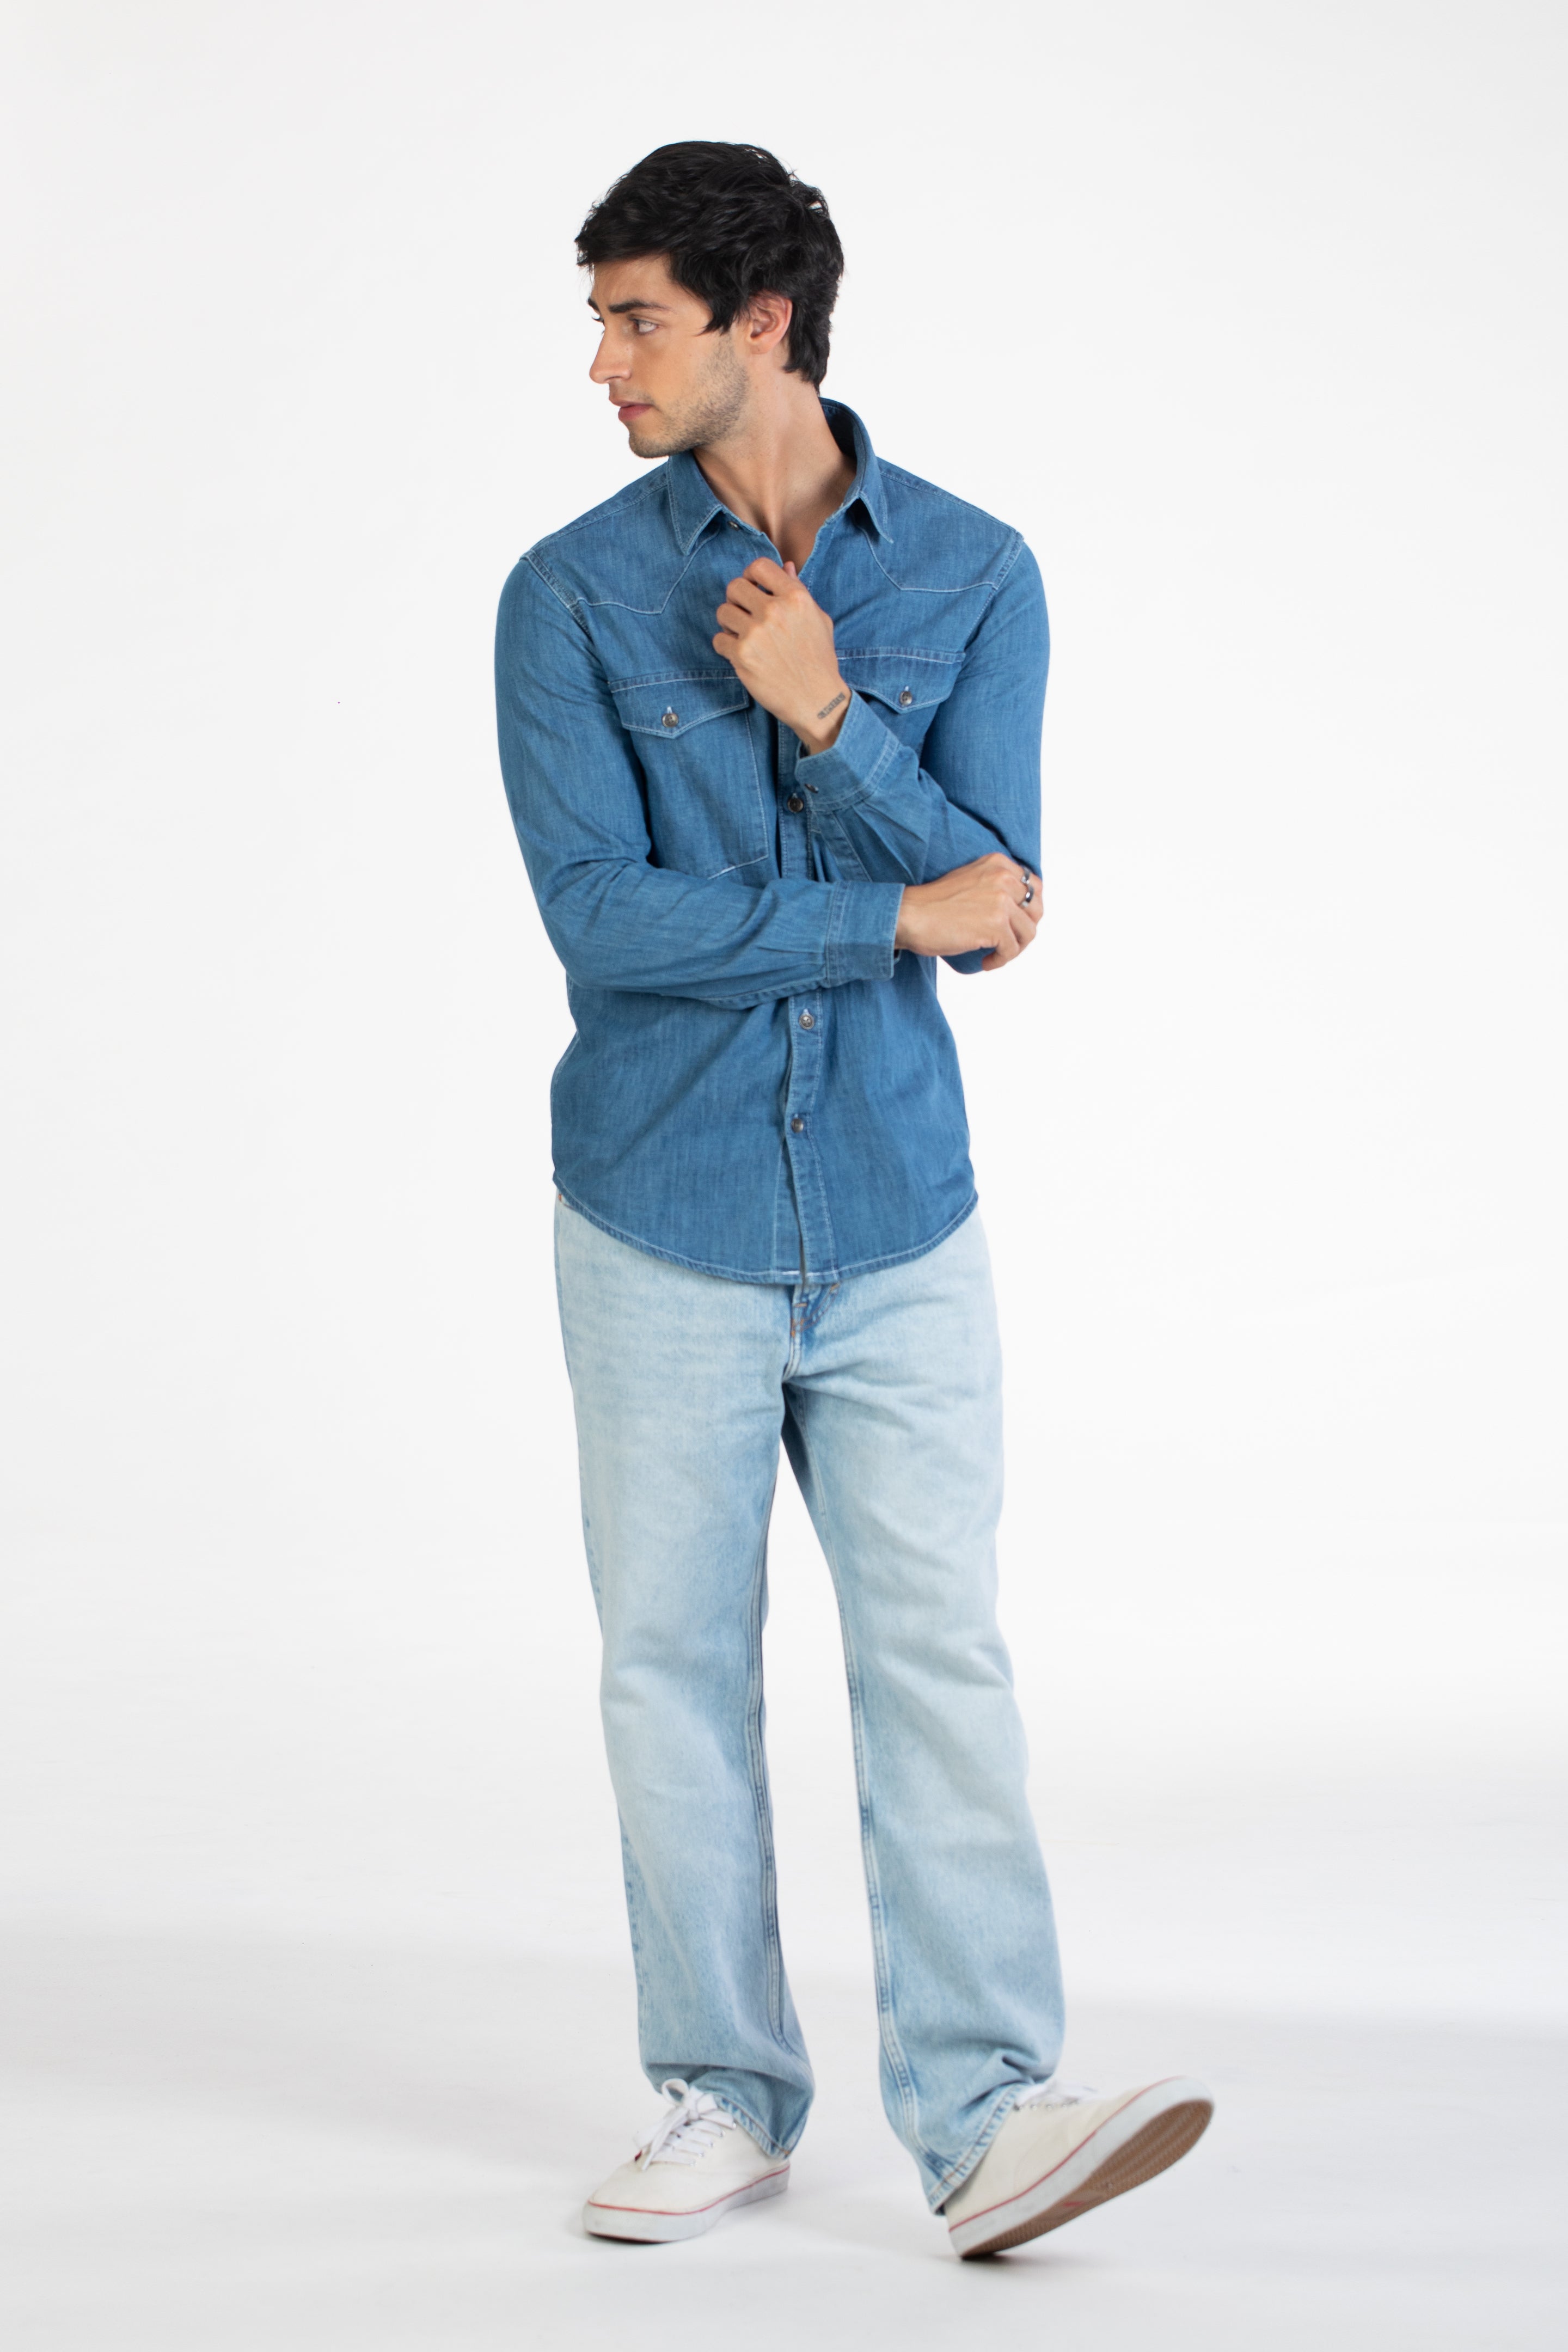 8 Black Shirt Combination Ideas for men 2023 | Jeans outfit men, Shirt  outfit men, Blue jeans outfit men